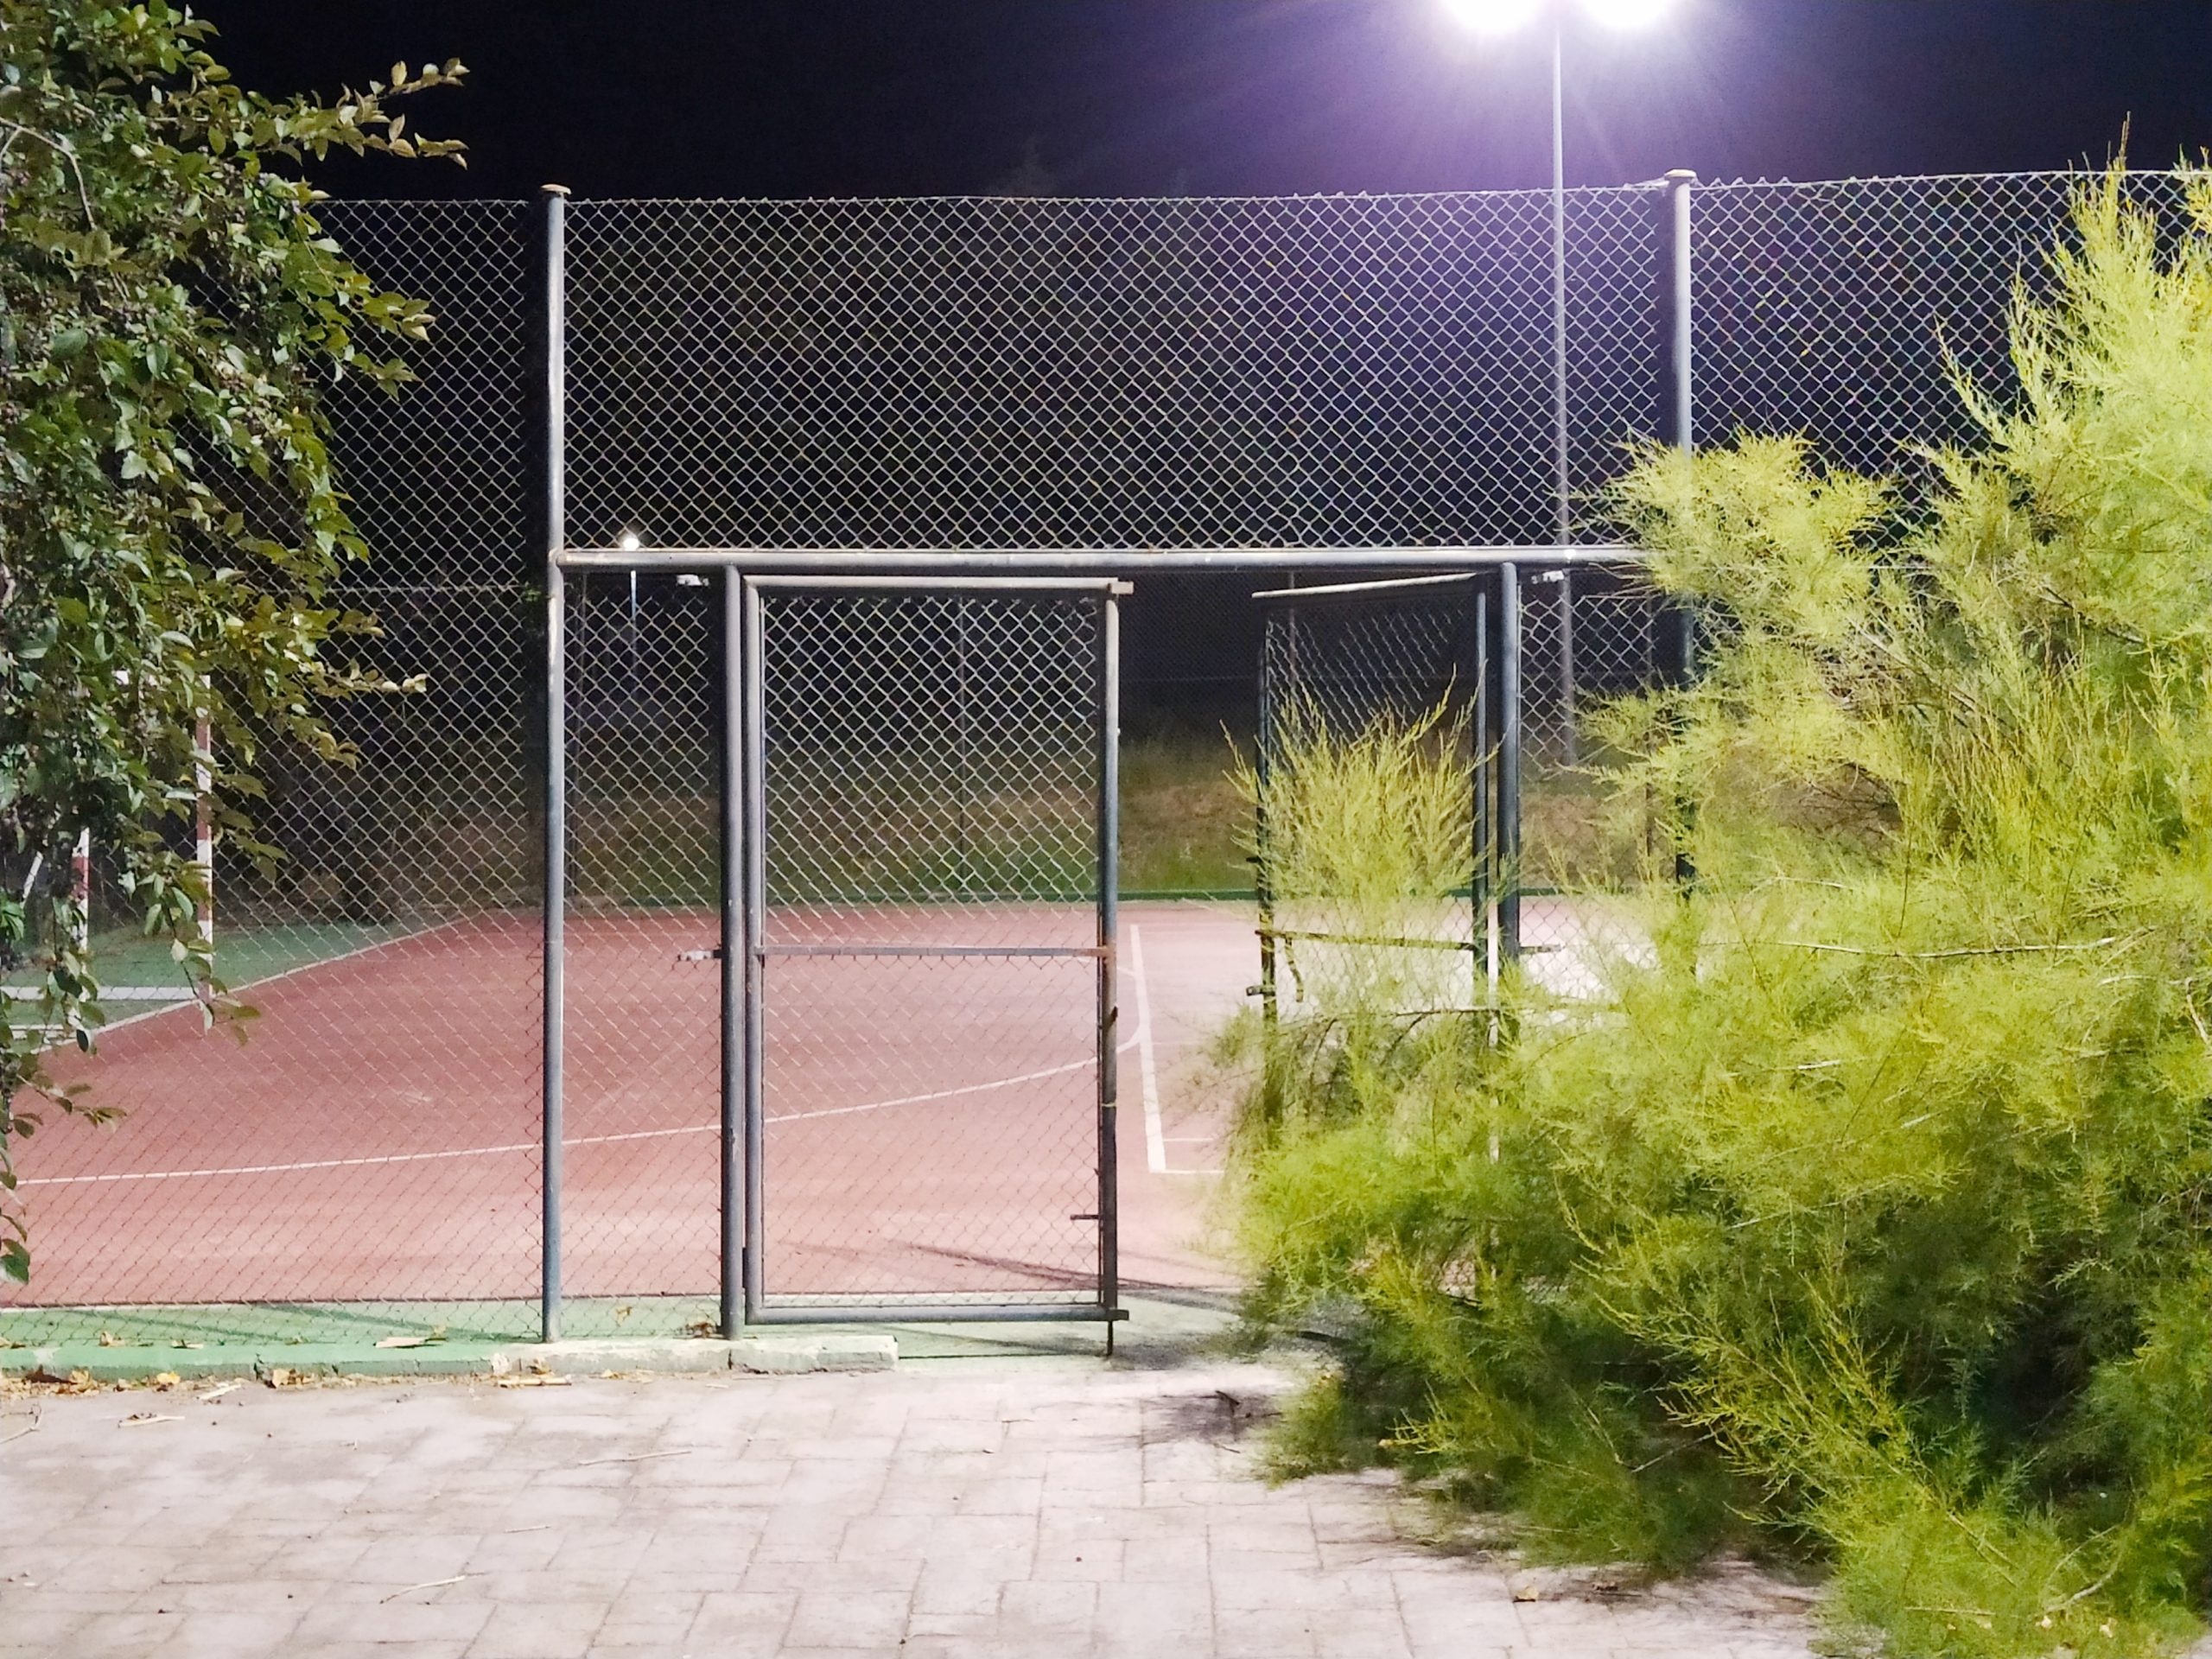 Puerta de acceso a pista de basket en la urbanización Miraval. Alalpardo - Madrid. Spain